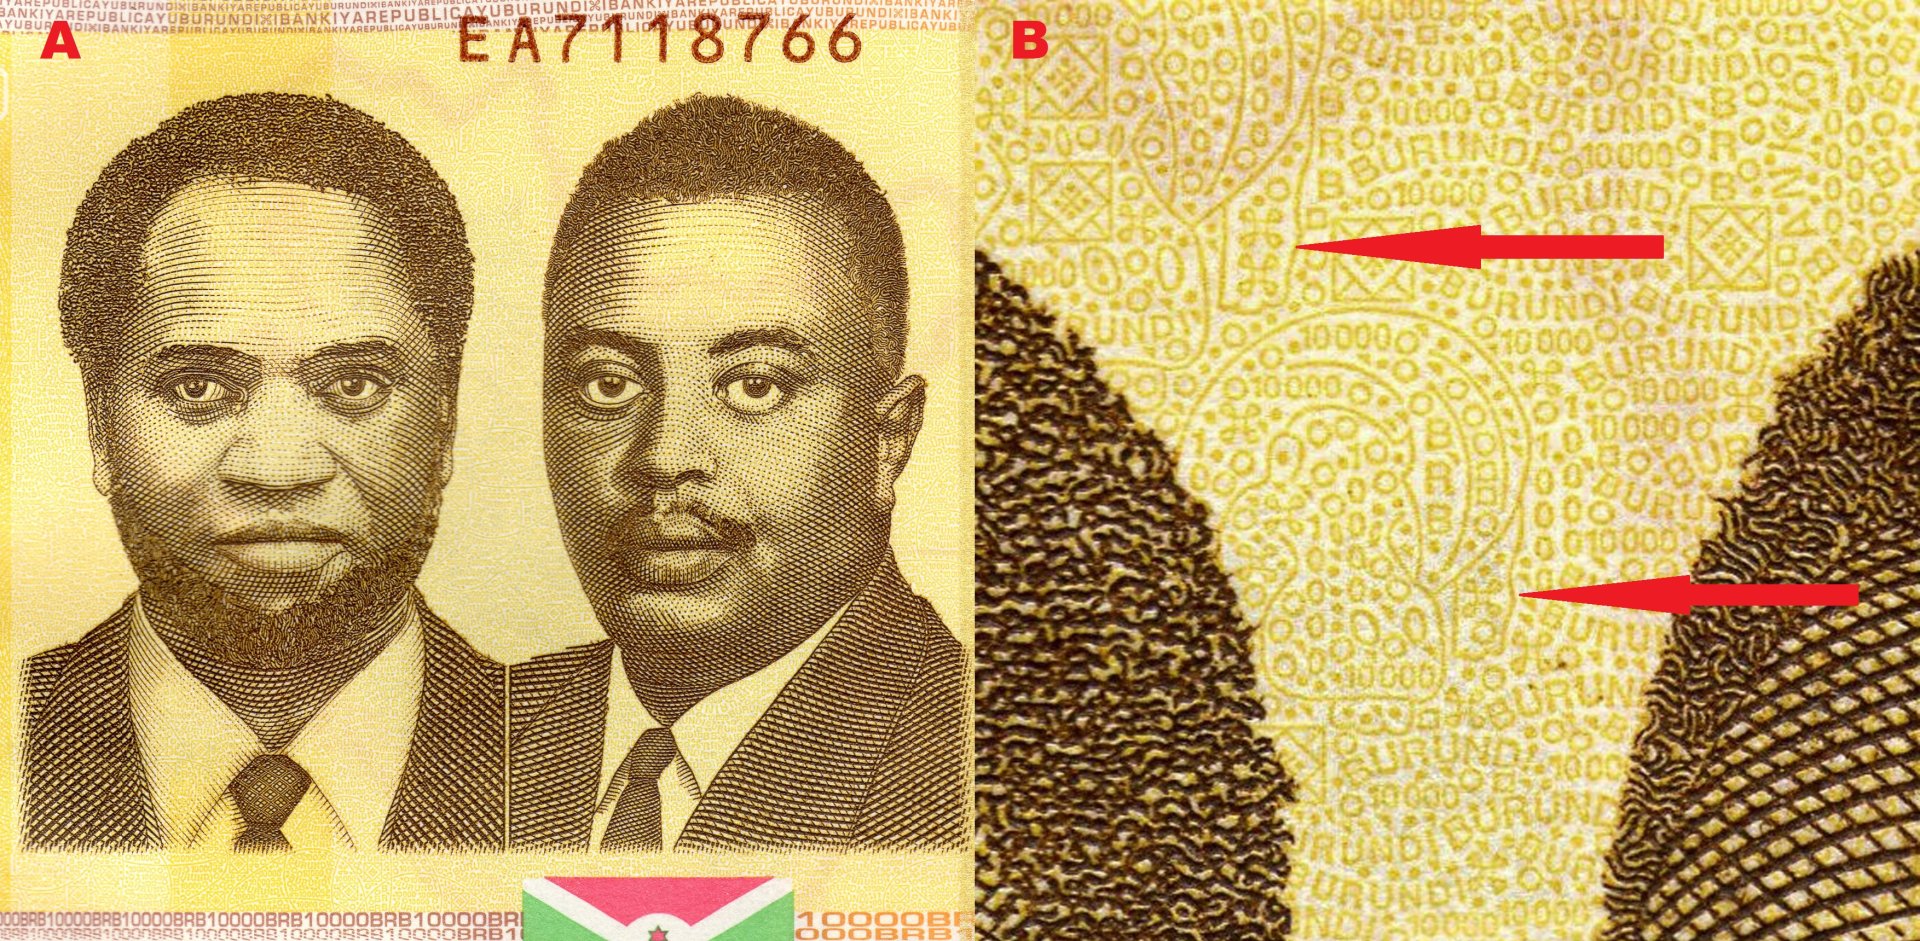 3 A) Portrét prezidenta Melchiora Ndadaye (vlevo) a prince Luise Rwagasoreho (vpravo). B) podkladová, červená šipka směřuje k obrazu hrocha.